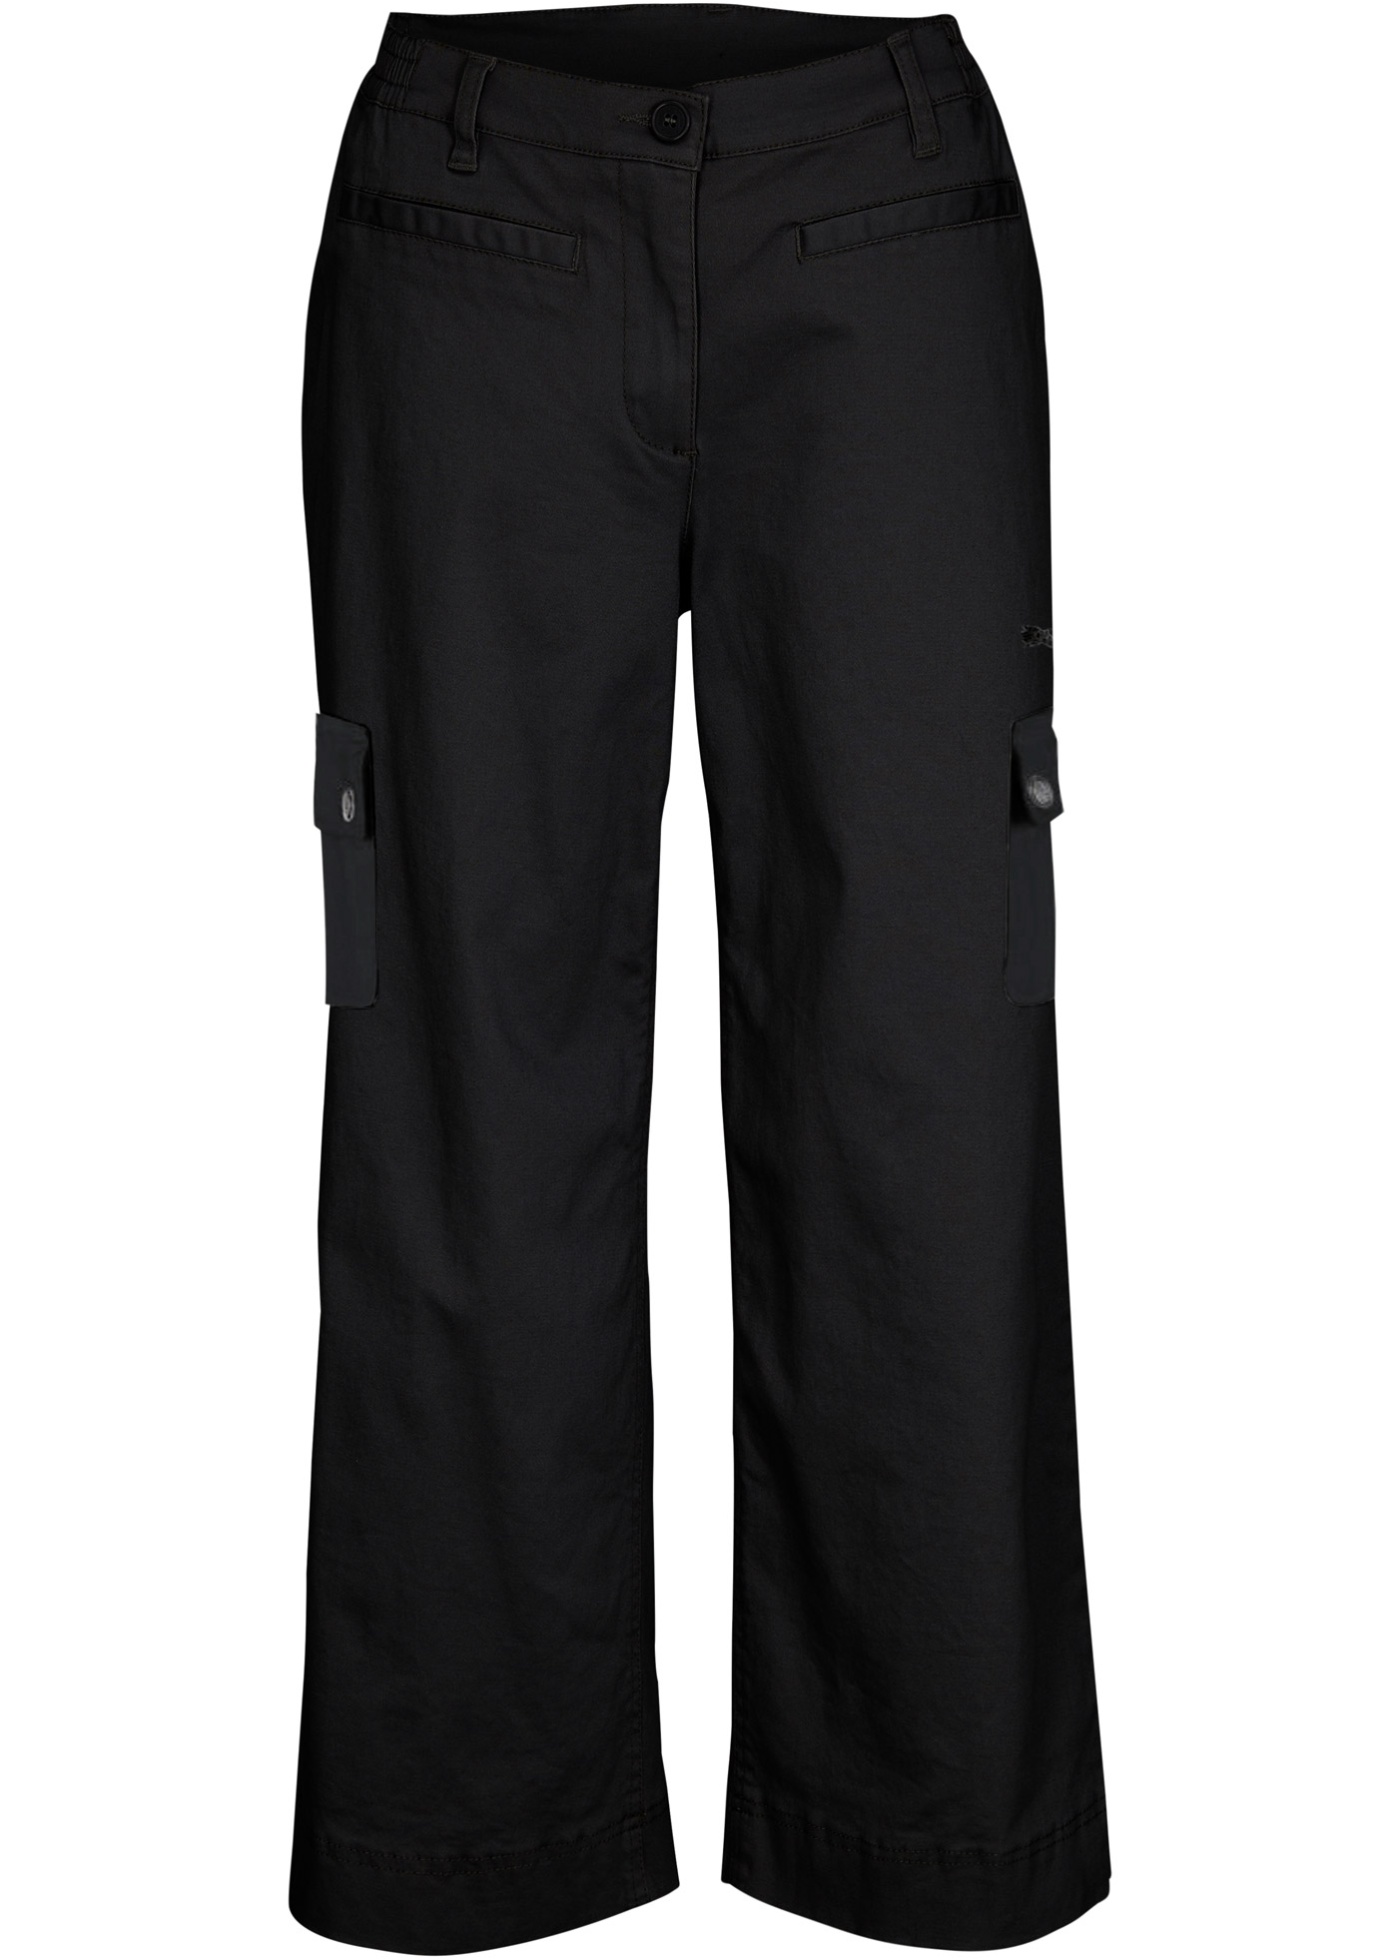 pantalon cargo coton à taille confortable, loose fit